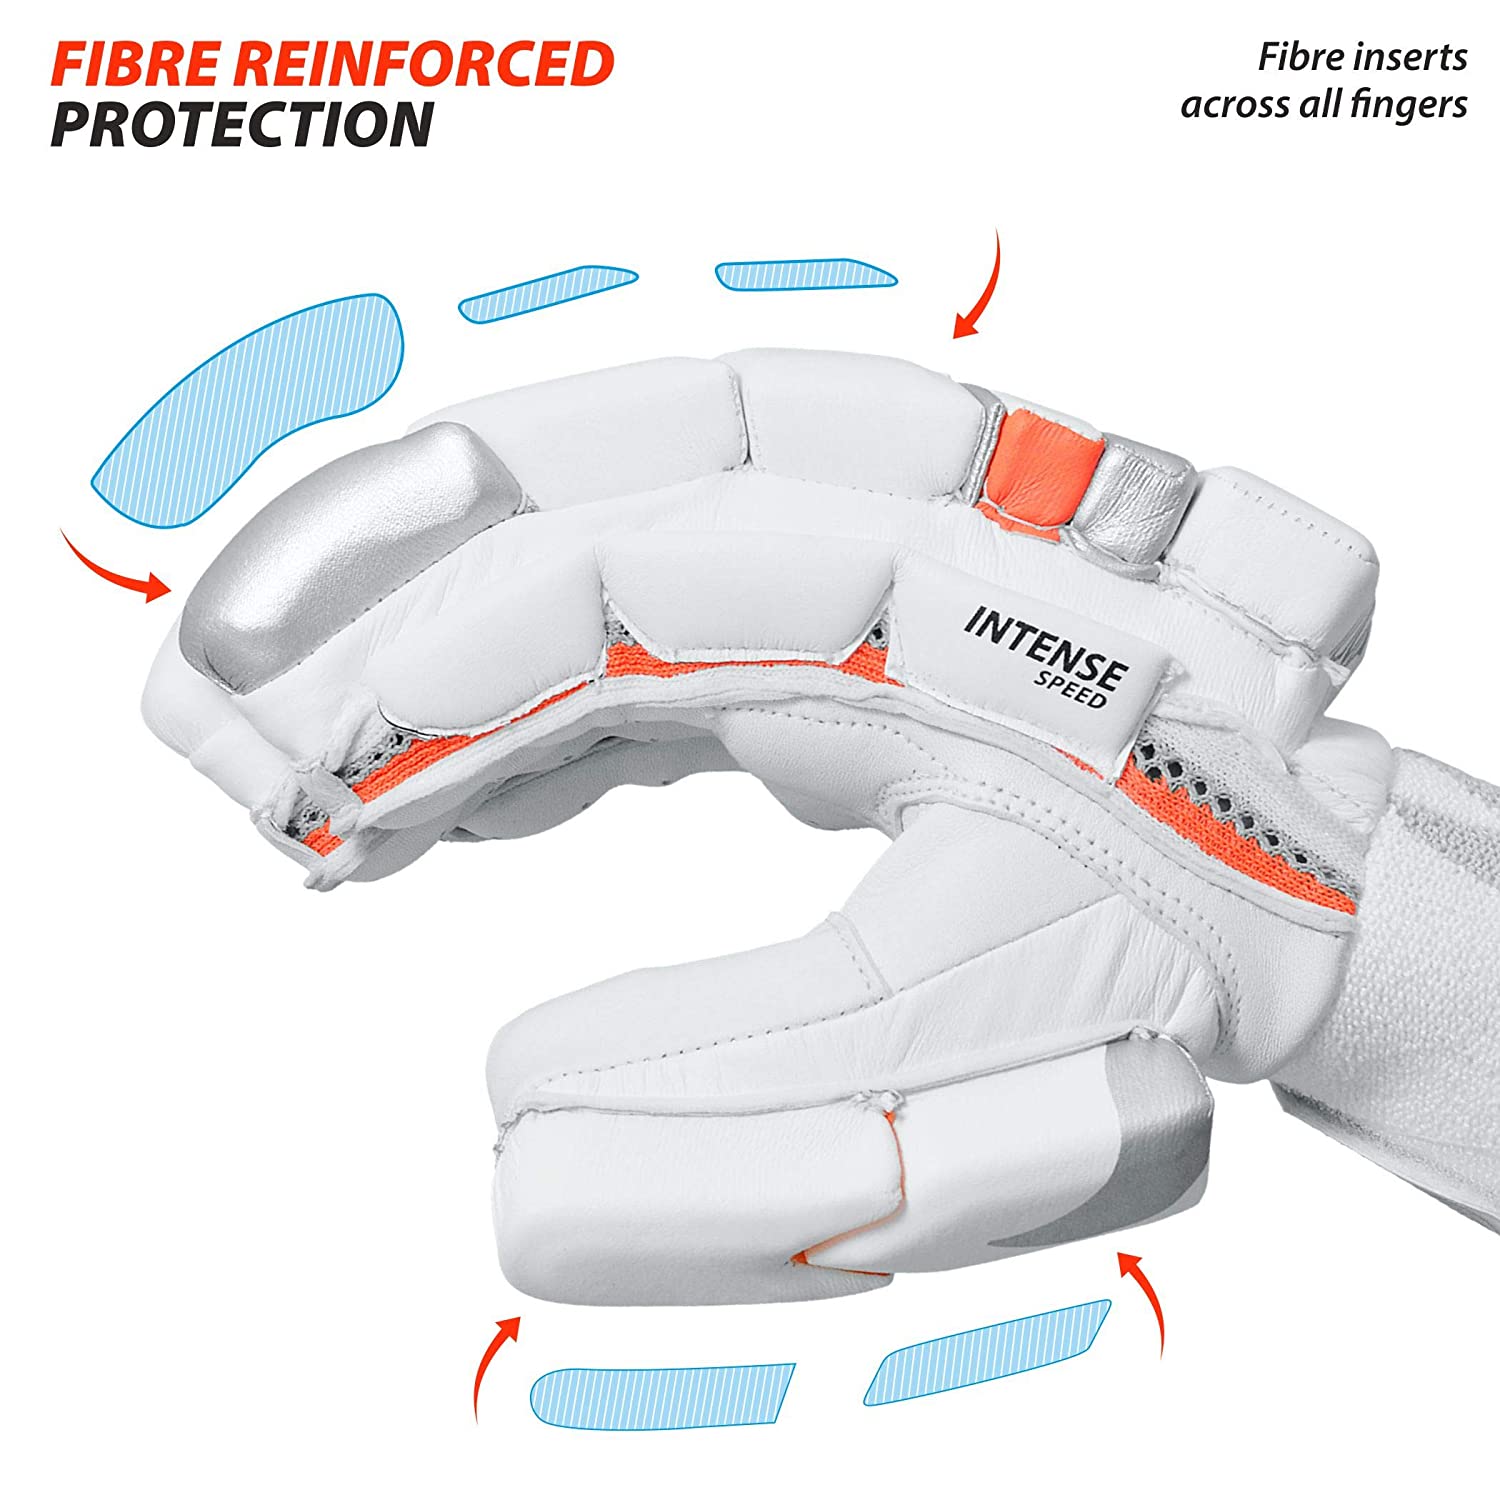 DSC Intense Speed RH Batting Gloves , White - Best Price online Prokicksports.com